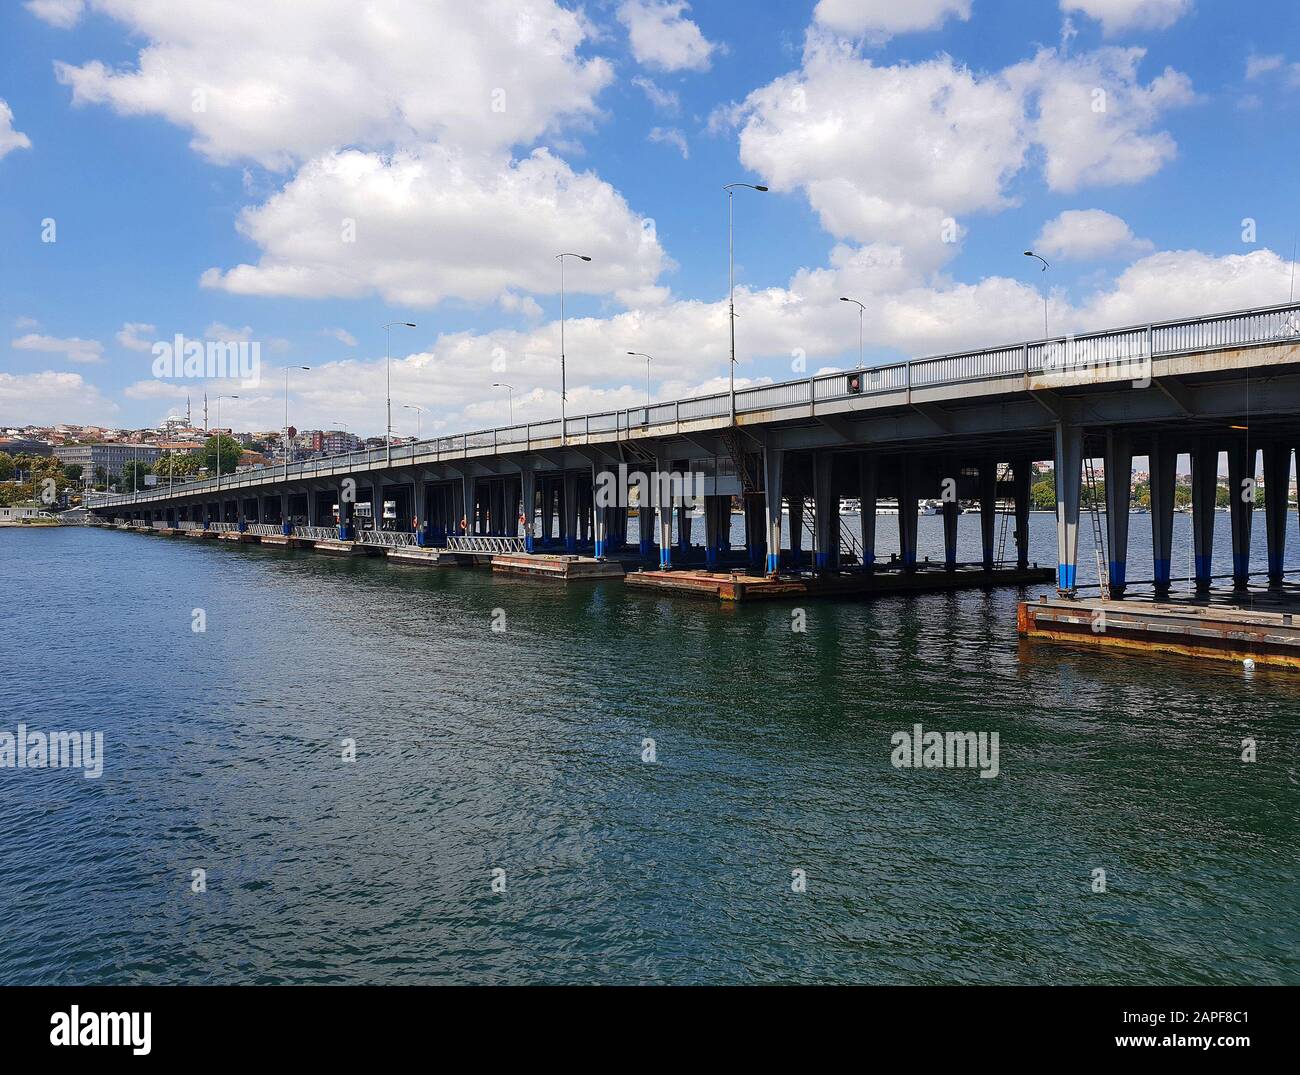 Vista de un puente sobre el estrecho del Bósforo desde un barco fluvial, Estambul, Turquía Foto de stock